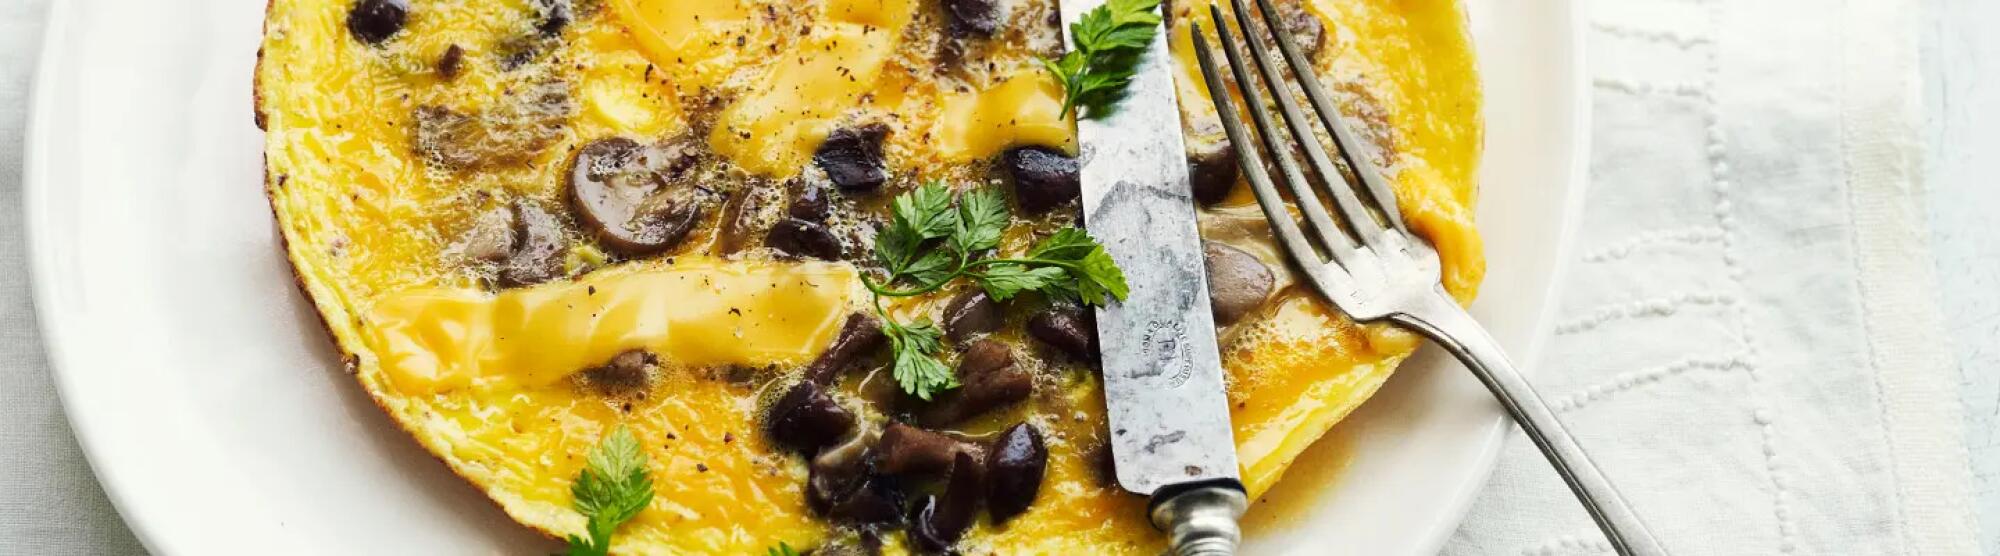 Recette : Omelette aux champignons et fromage